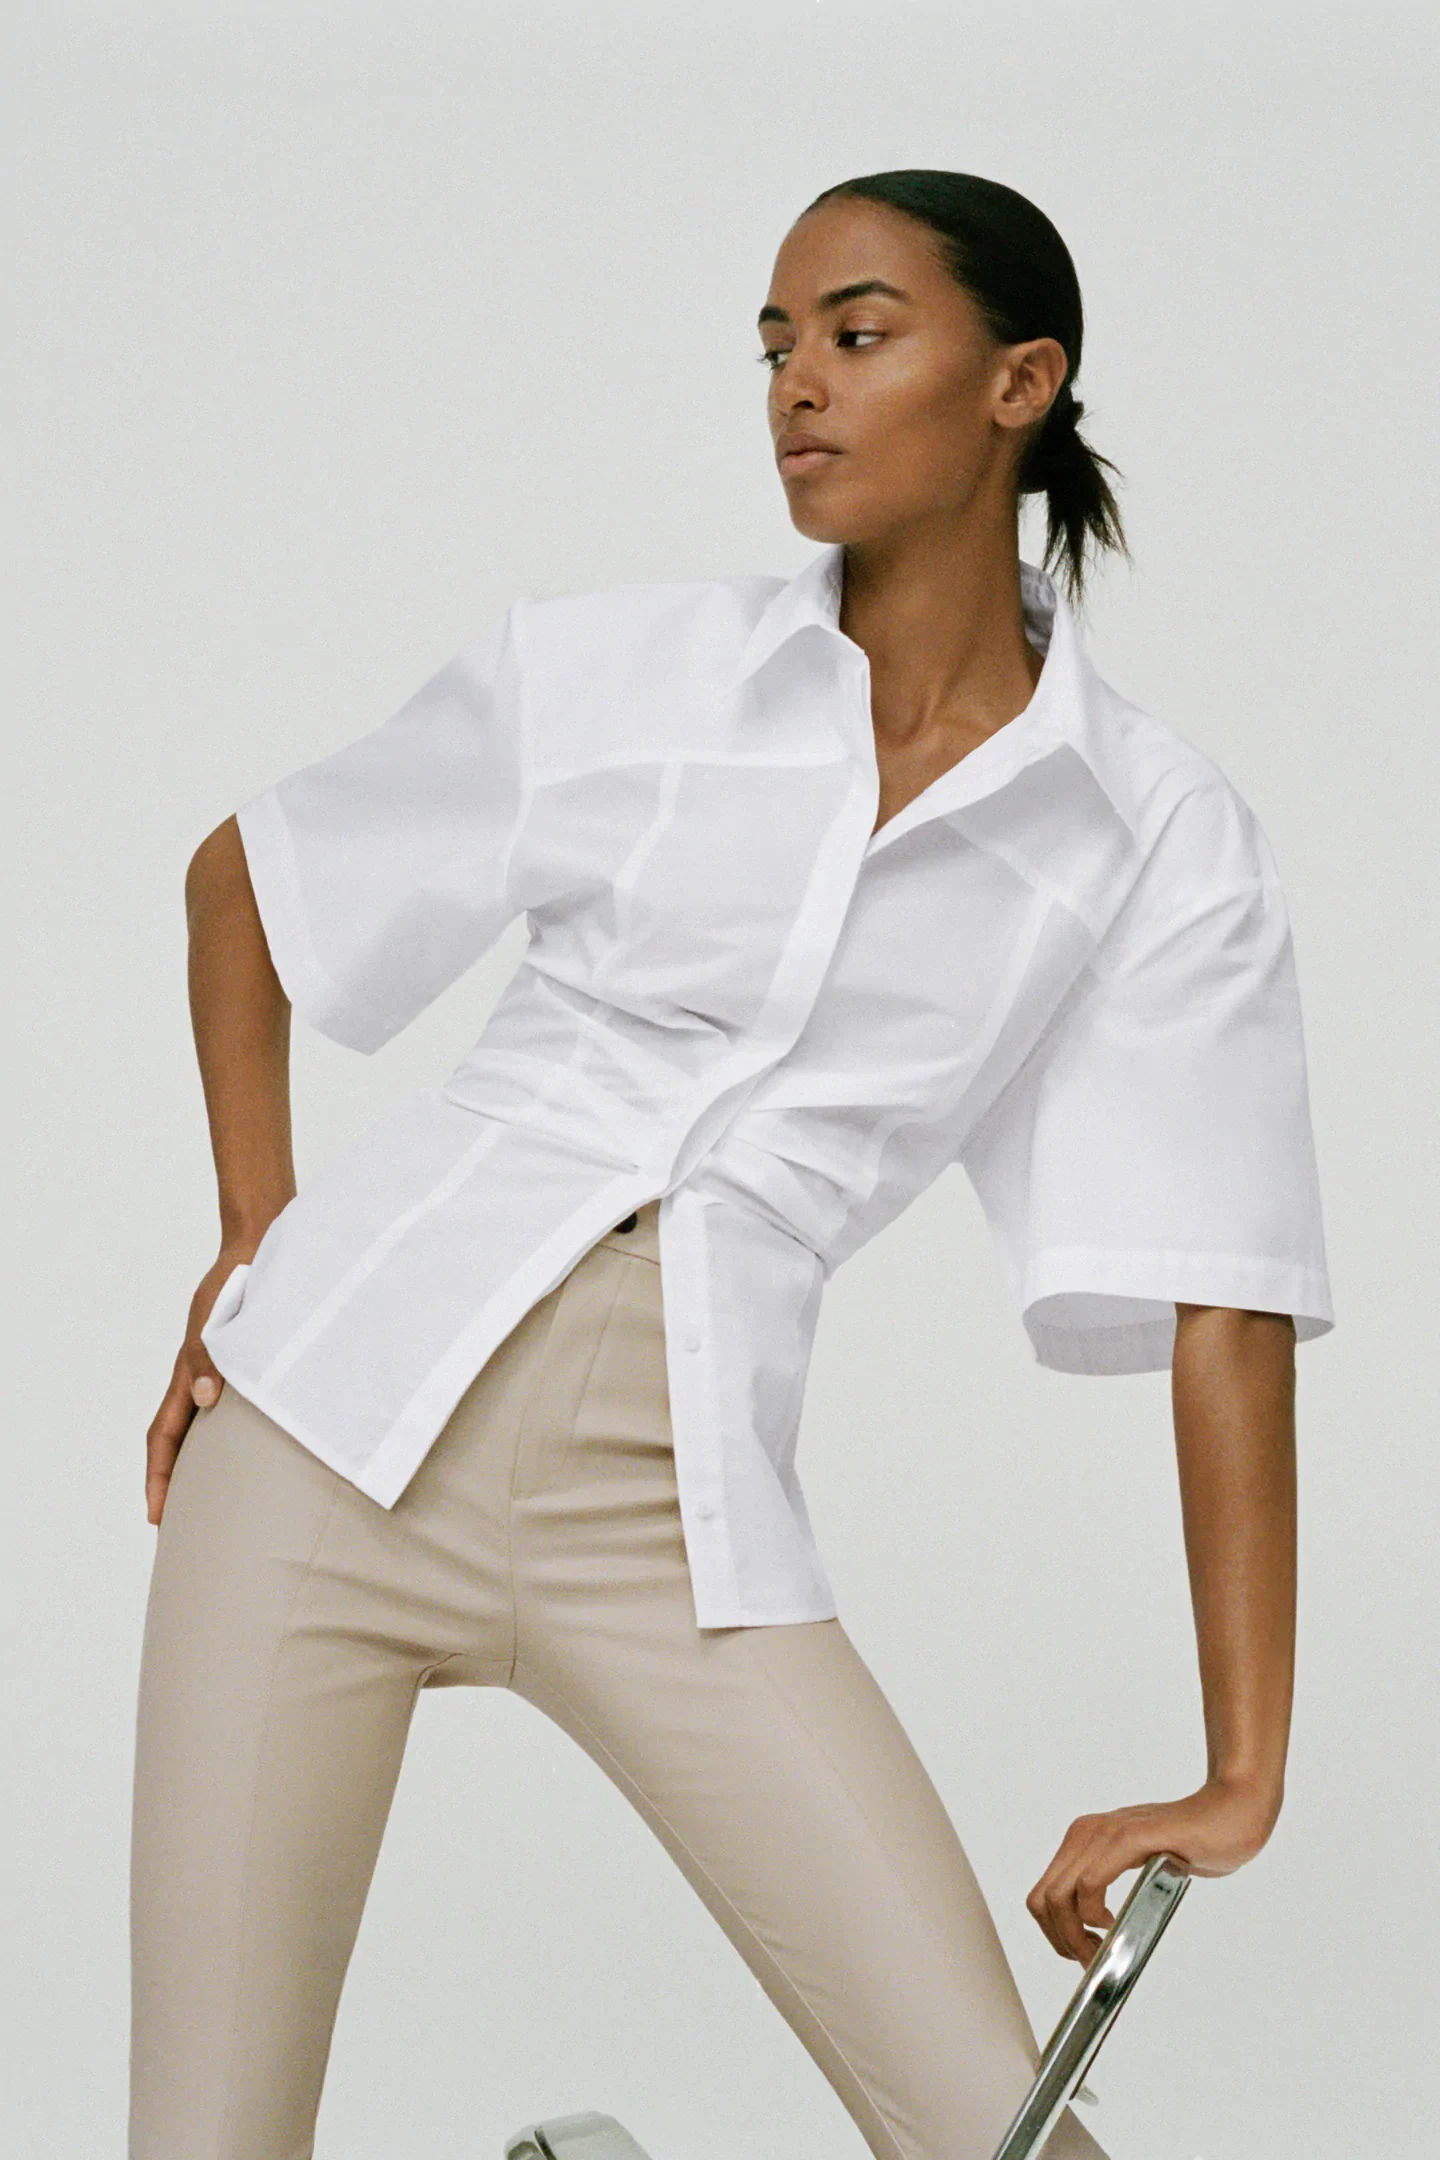 Fotos: Las camisas blancas más de las rebajas de Zara que serán tendencia esta primavera y que ya nos hacen soñar con el buen tiempo | Mujer Hoy